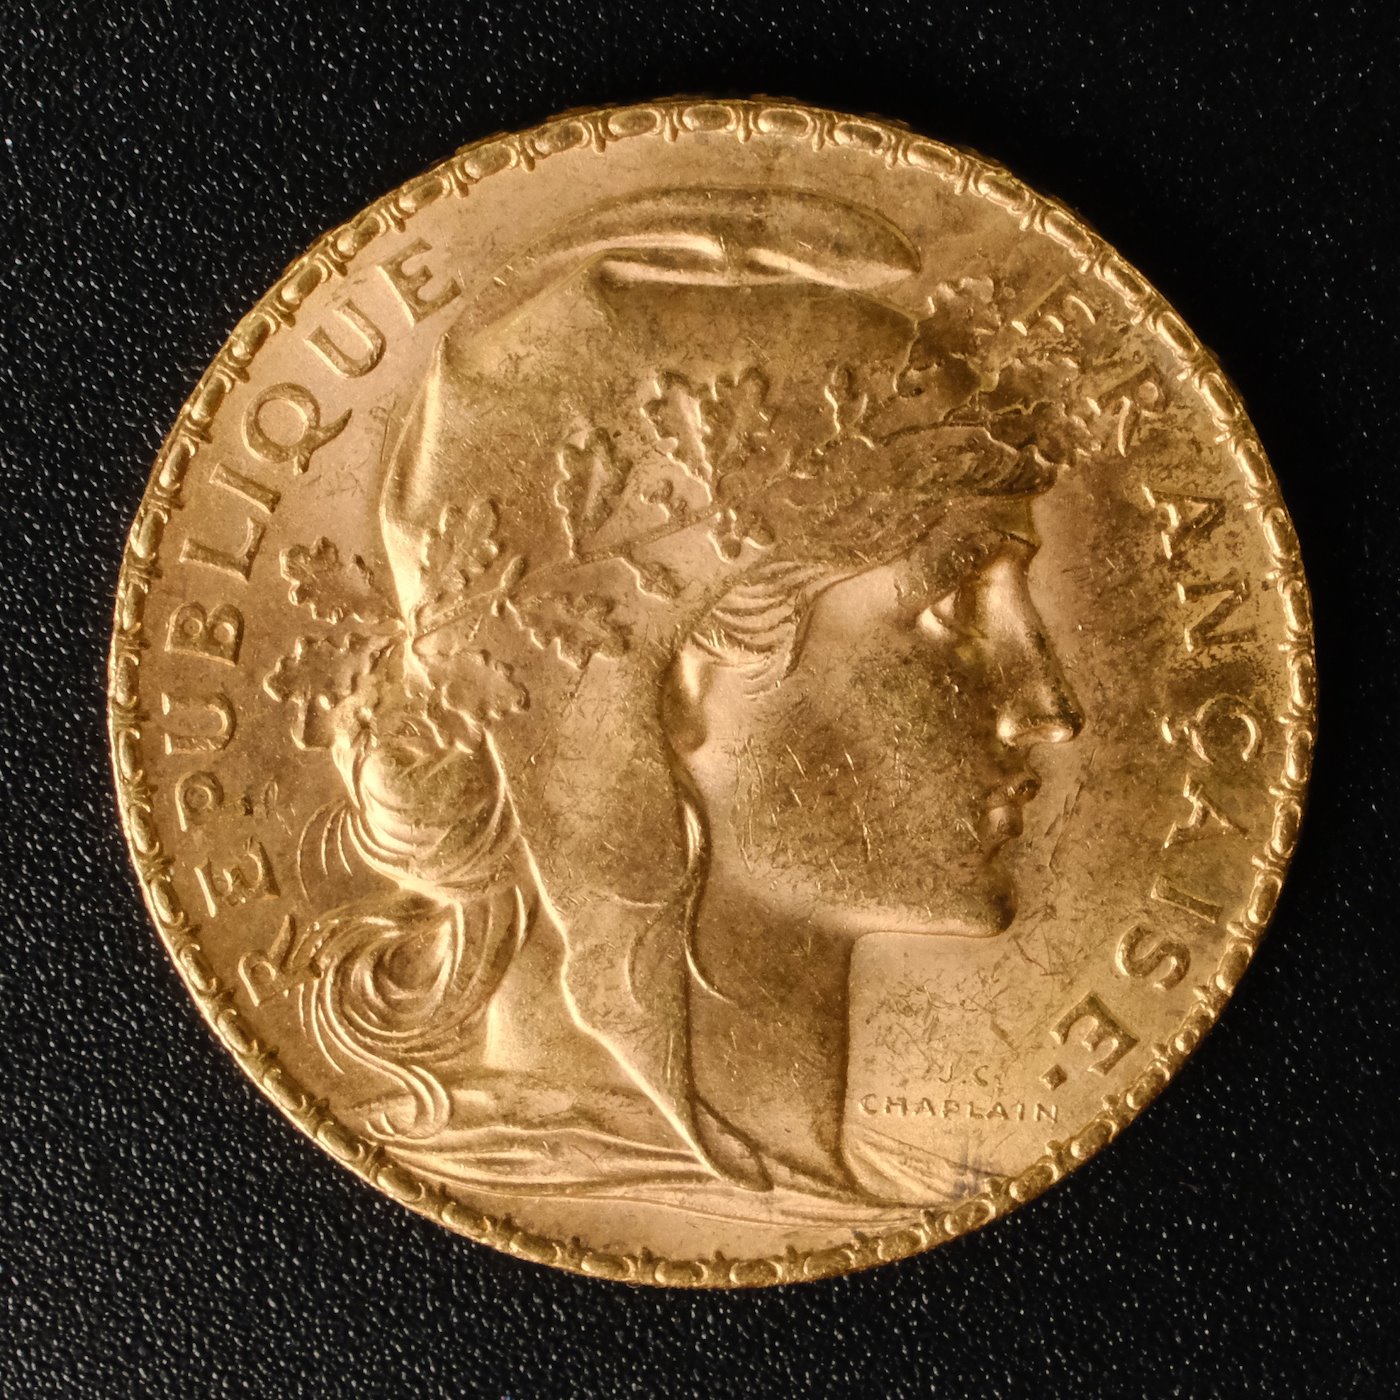 Mince - Francie zlatý 20 frank ROOSTER 1908, Zlato 900/1000, hrubá hmotnost 6,44g